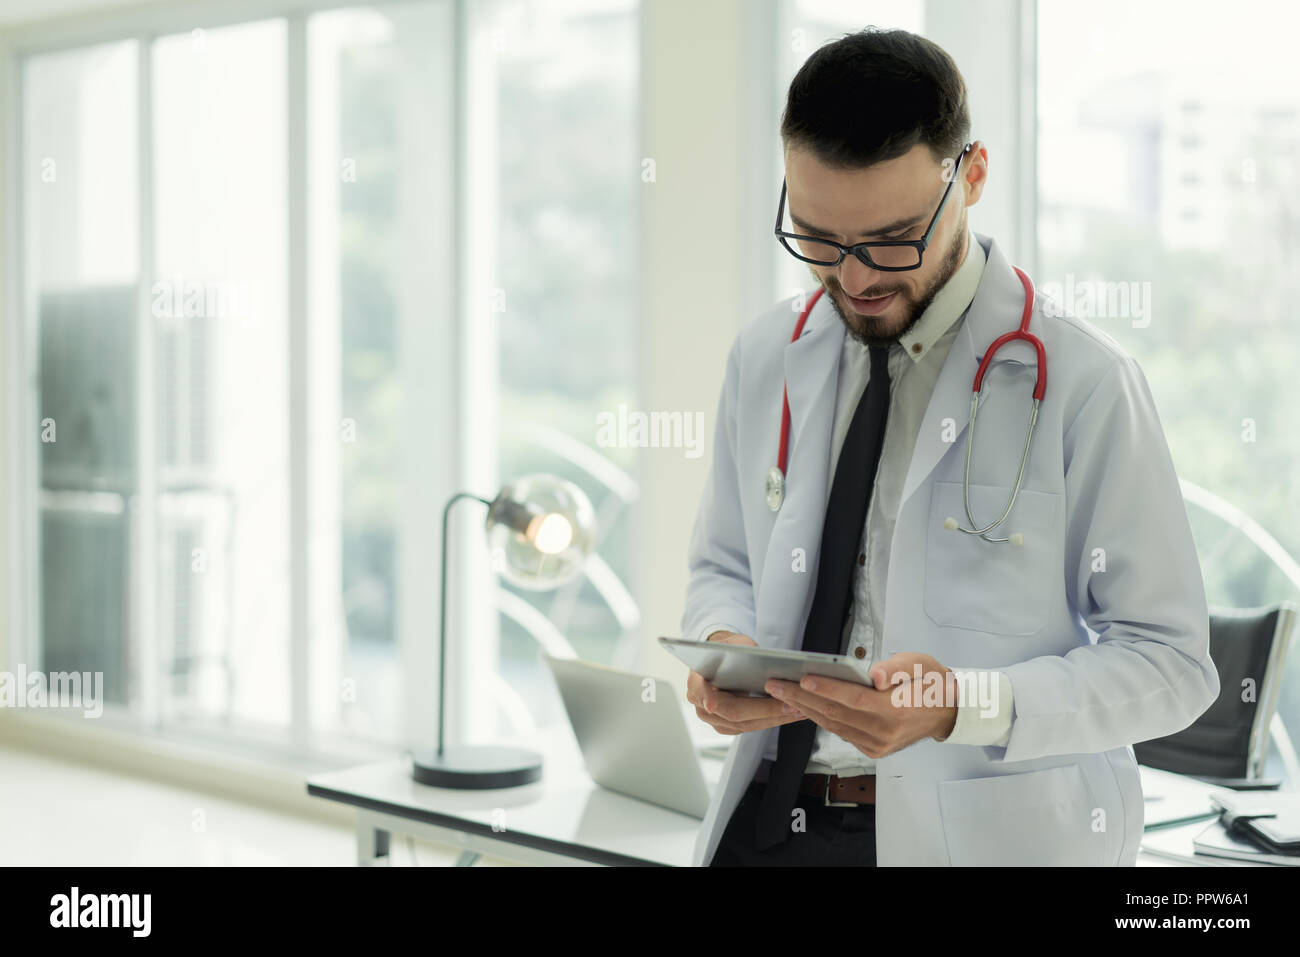 Arzt im Krankenhaus arbeiten mit moderner Technologie für gesund. Freundliche mann Arzt schauen und lächeln für gutes Ergebnis von Patientendaten. Stockfoto